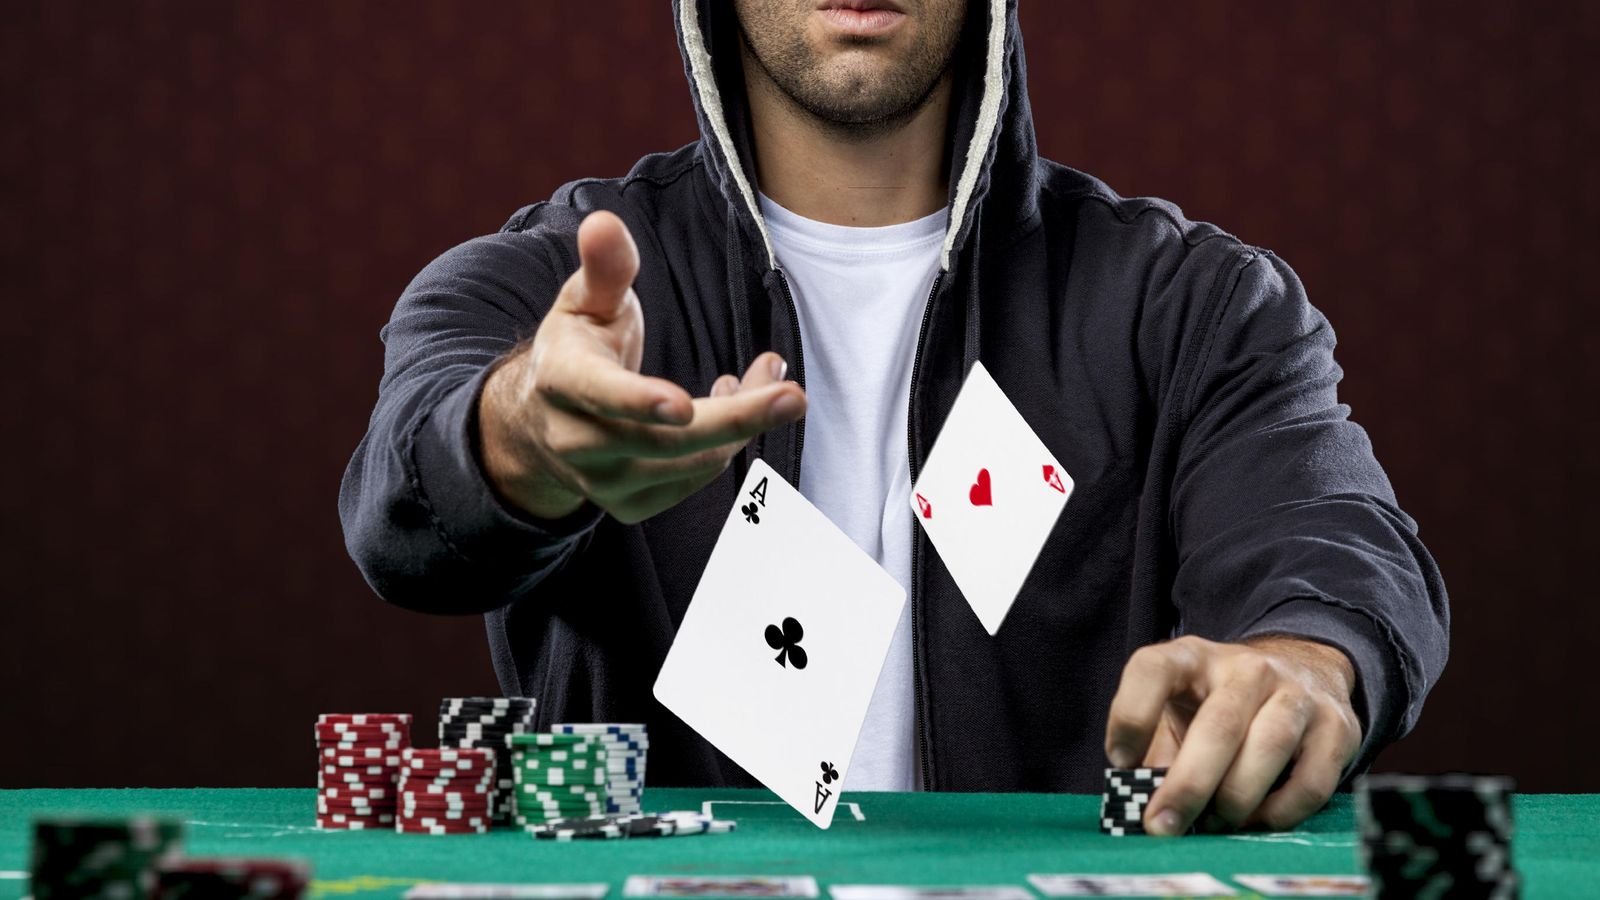 Foto: Los jugadores de póquer son buenos 'traders'. (iStock)